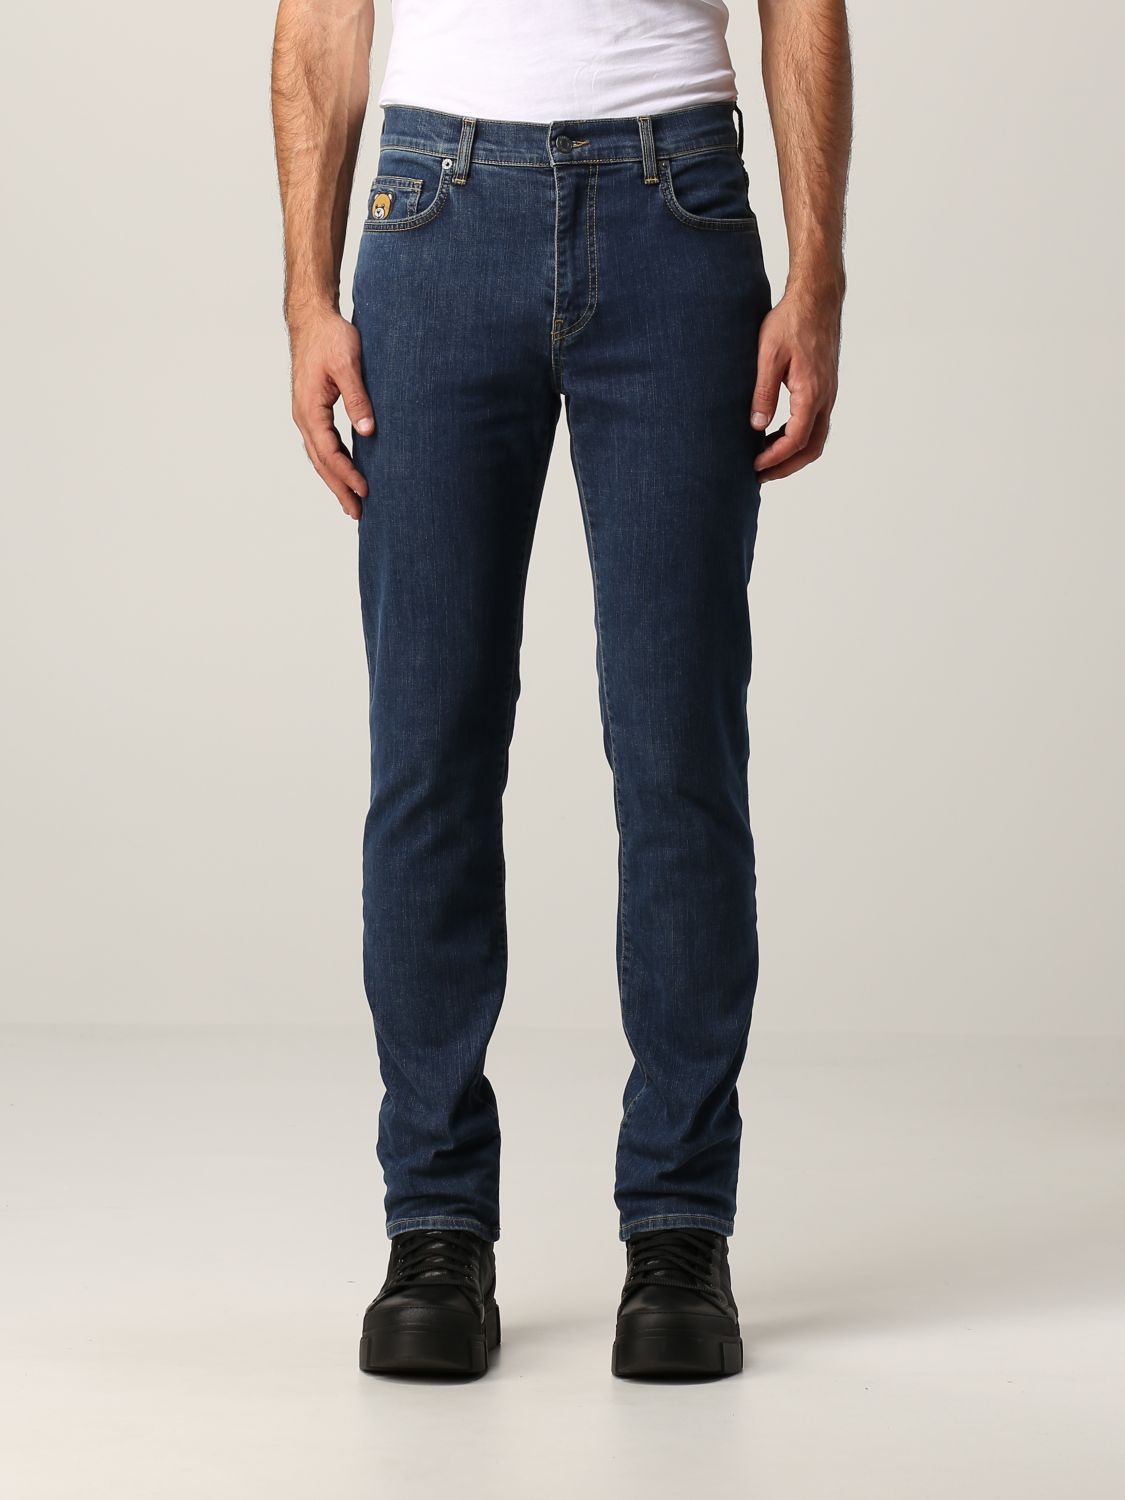 Jeans con teddy Giglio.com Abbigliamento Pantaloni e jeans Jeans 